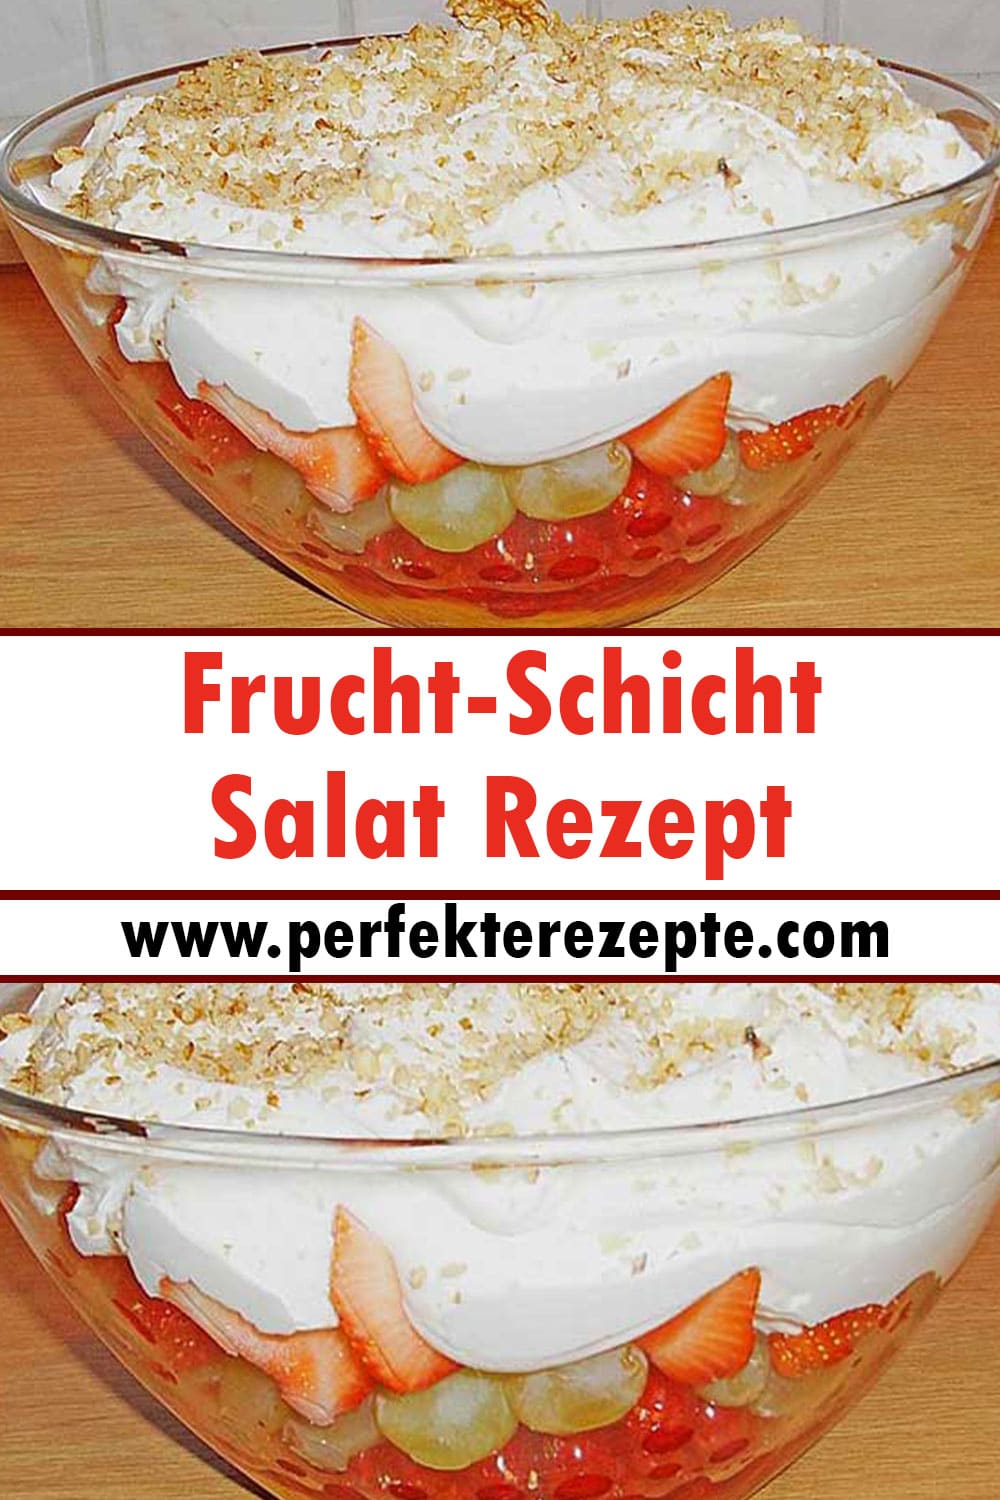 Frucht-Schicht-Salat Rezept (Besonders für Partys geeignet)